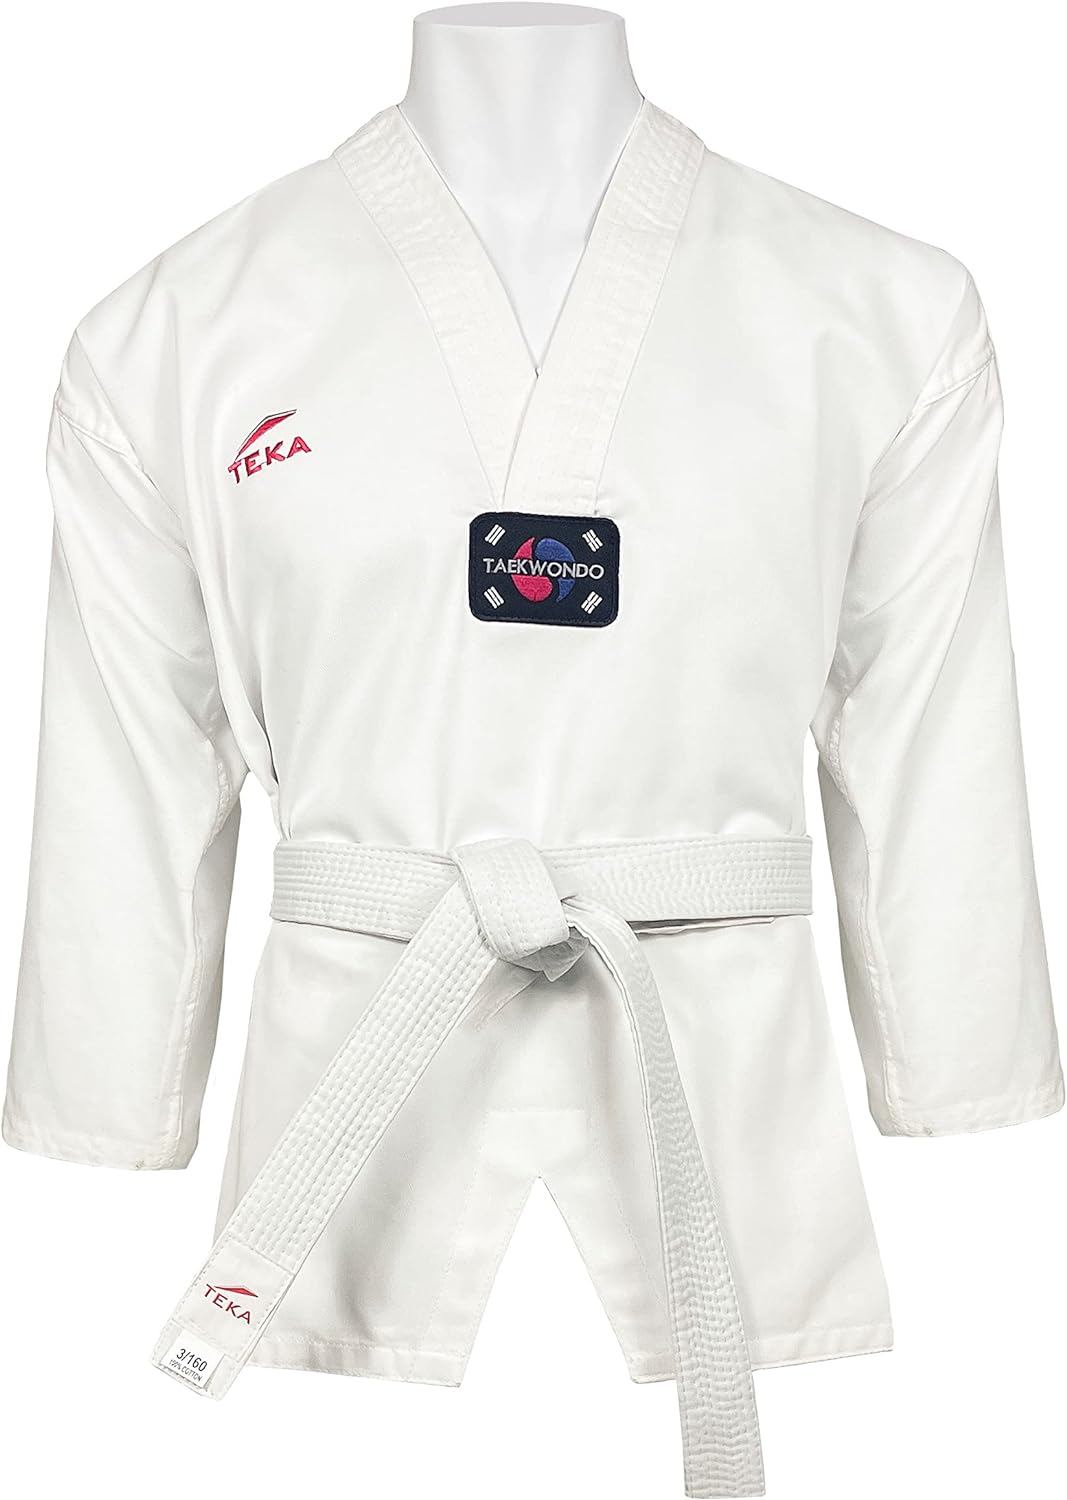 teka-taekwondo-white-uniform-8-oz-lightweight-with-free-belt